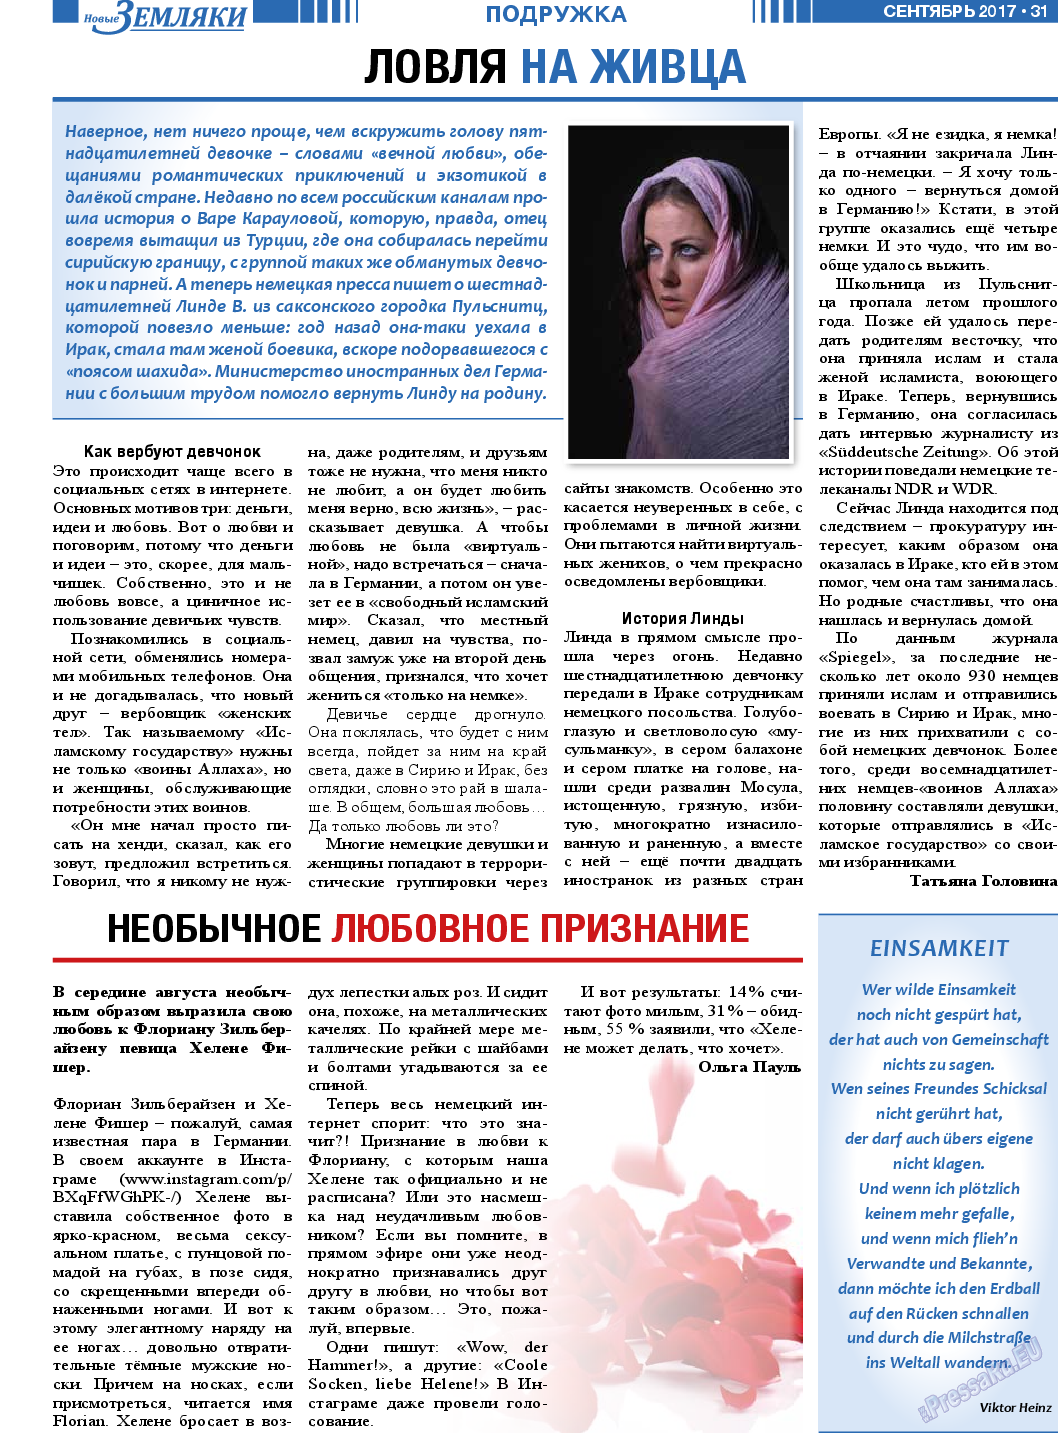 Новые Земляки, газета. 2017 №9 стр.31